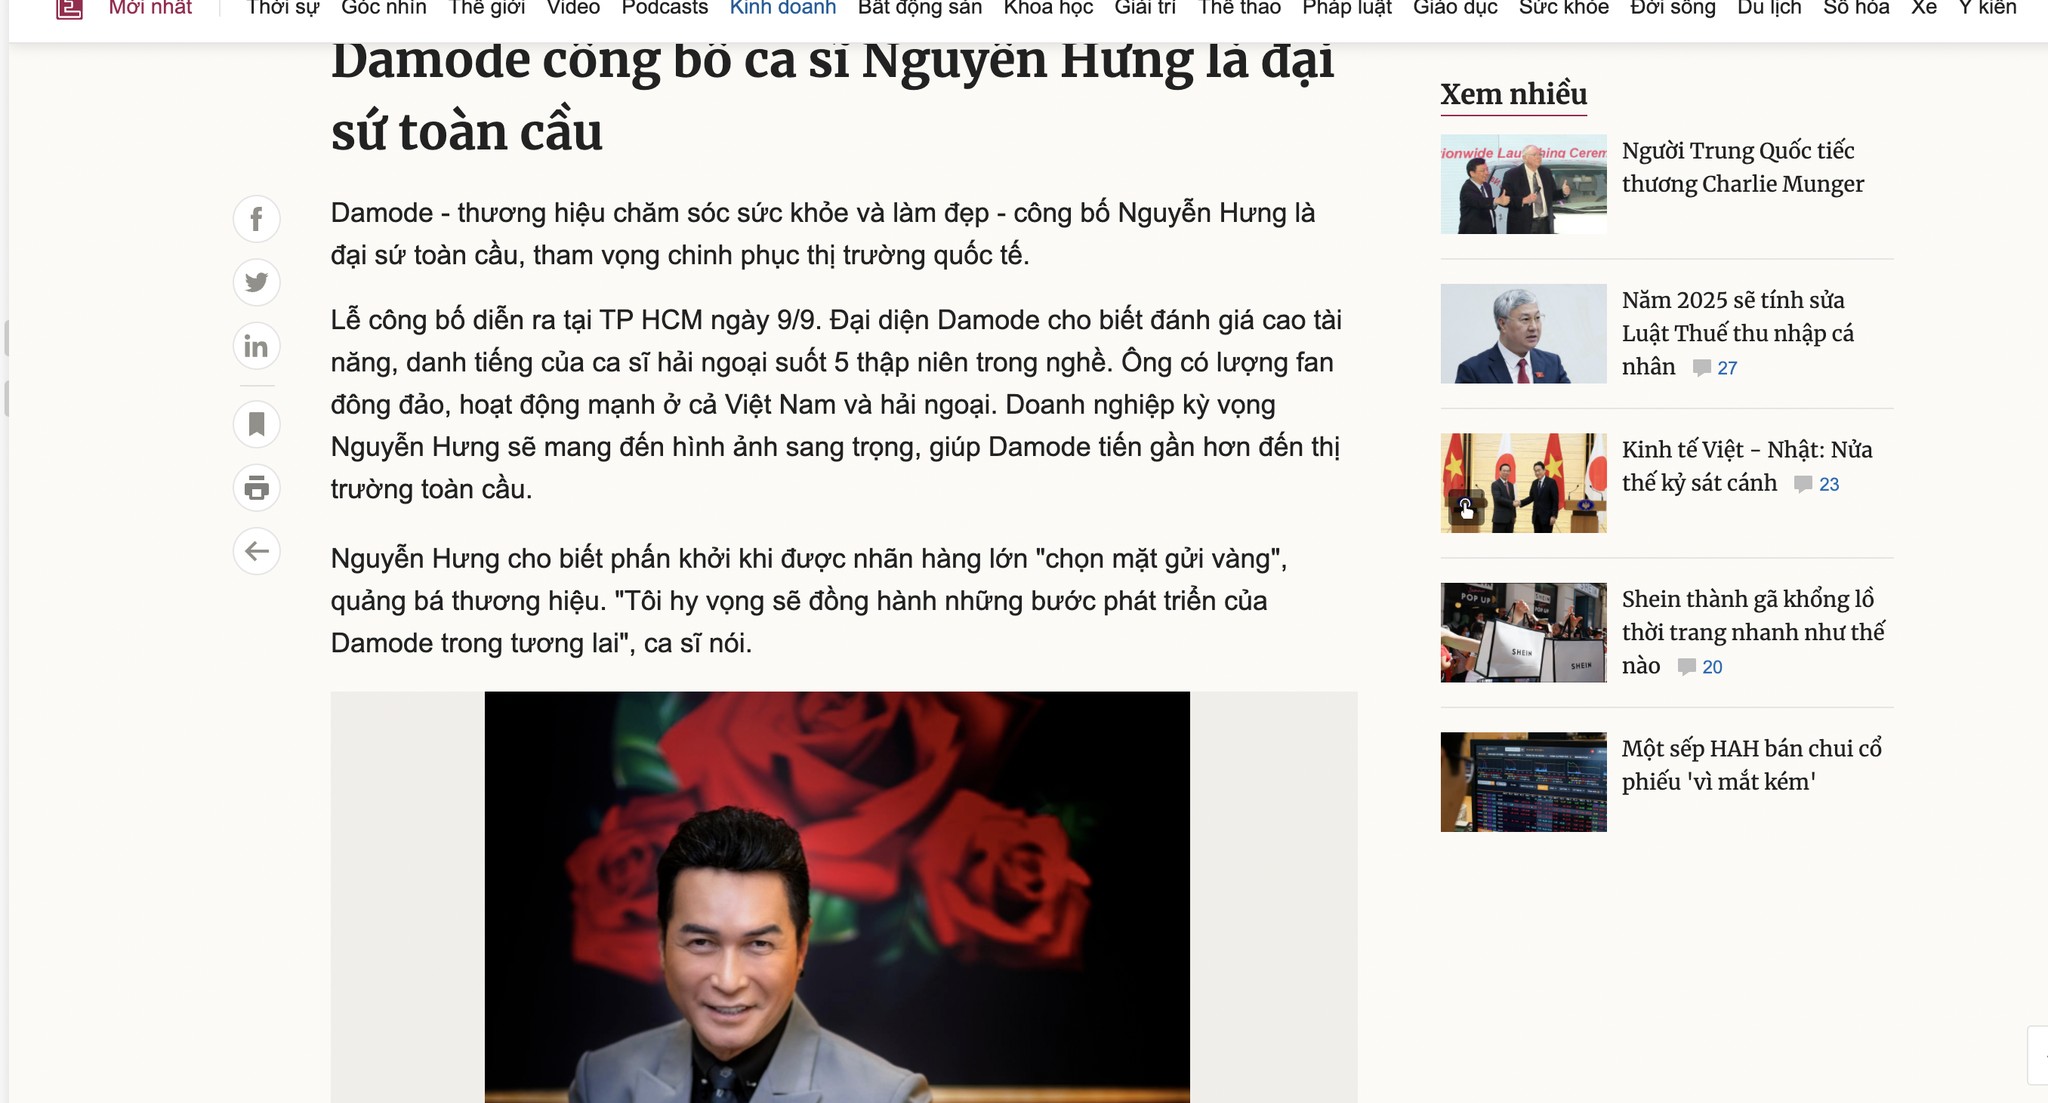 VNEXPRESS đưa tin: Damode công bố ca sĩ Nguyễn Hưng là đại sứ toàn cầu